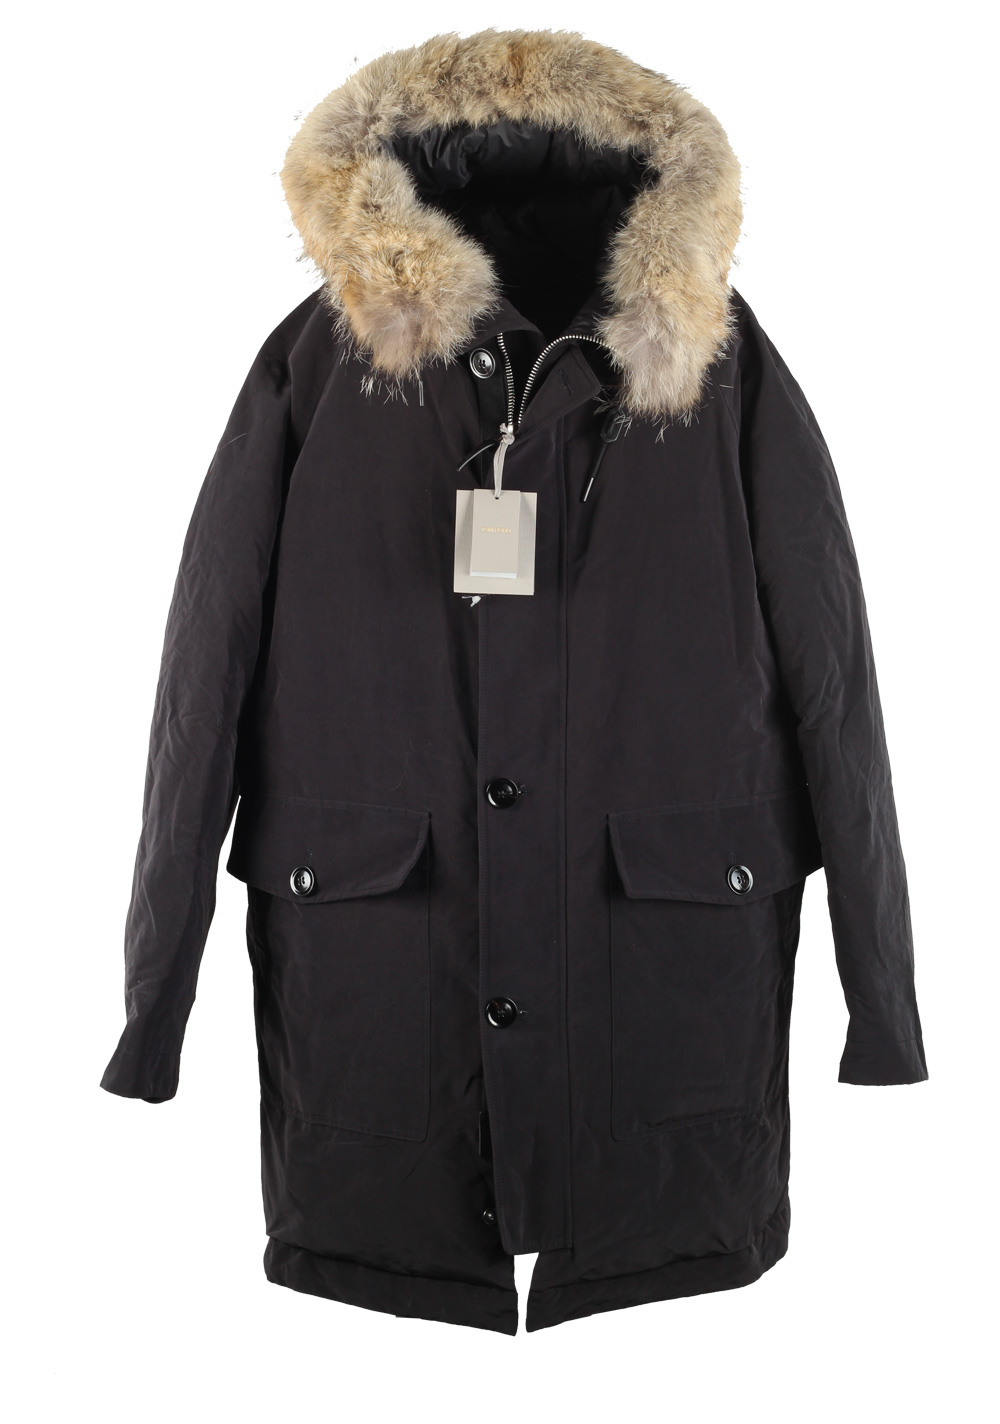 rijm minstens Site lijn TOM FORD Black Mountain Parka Jacket Coat Size 54 / 44R U.S. Outerwear |  Costume Limité